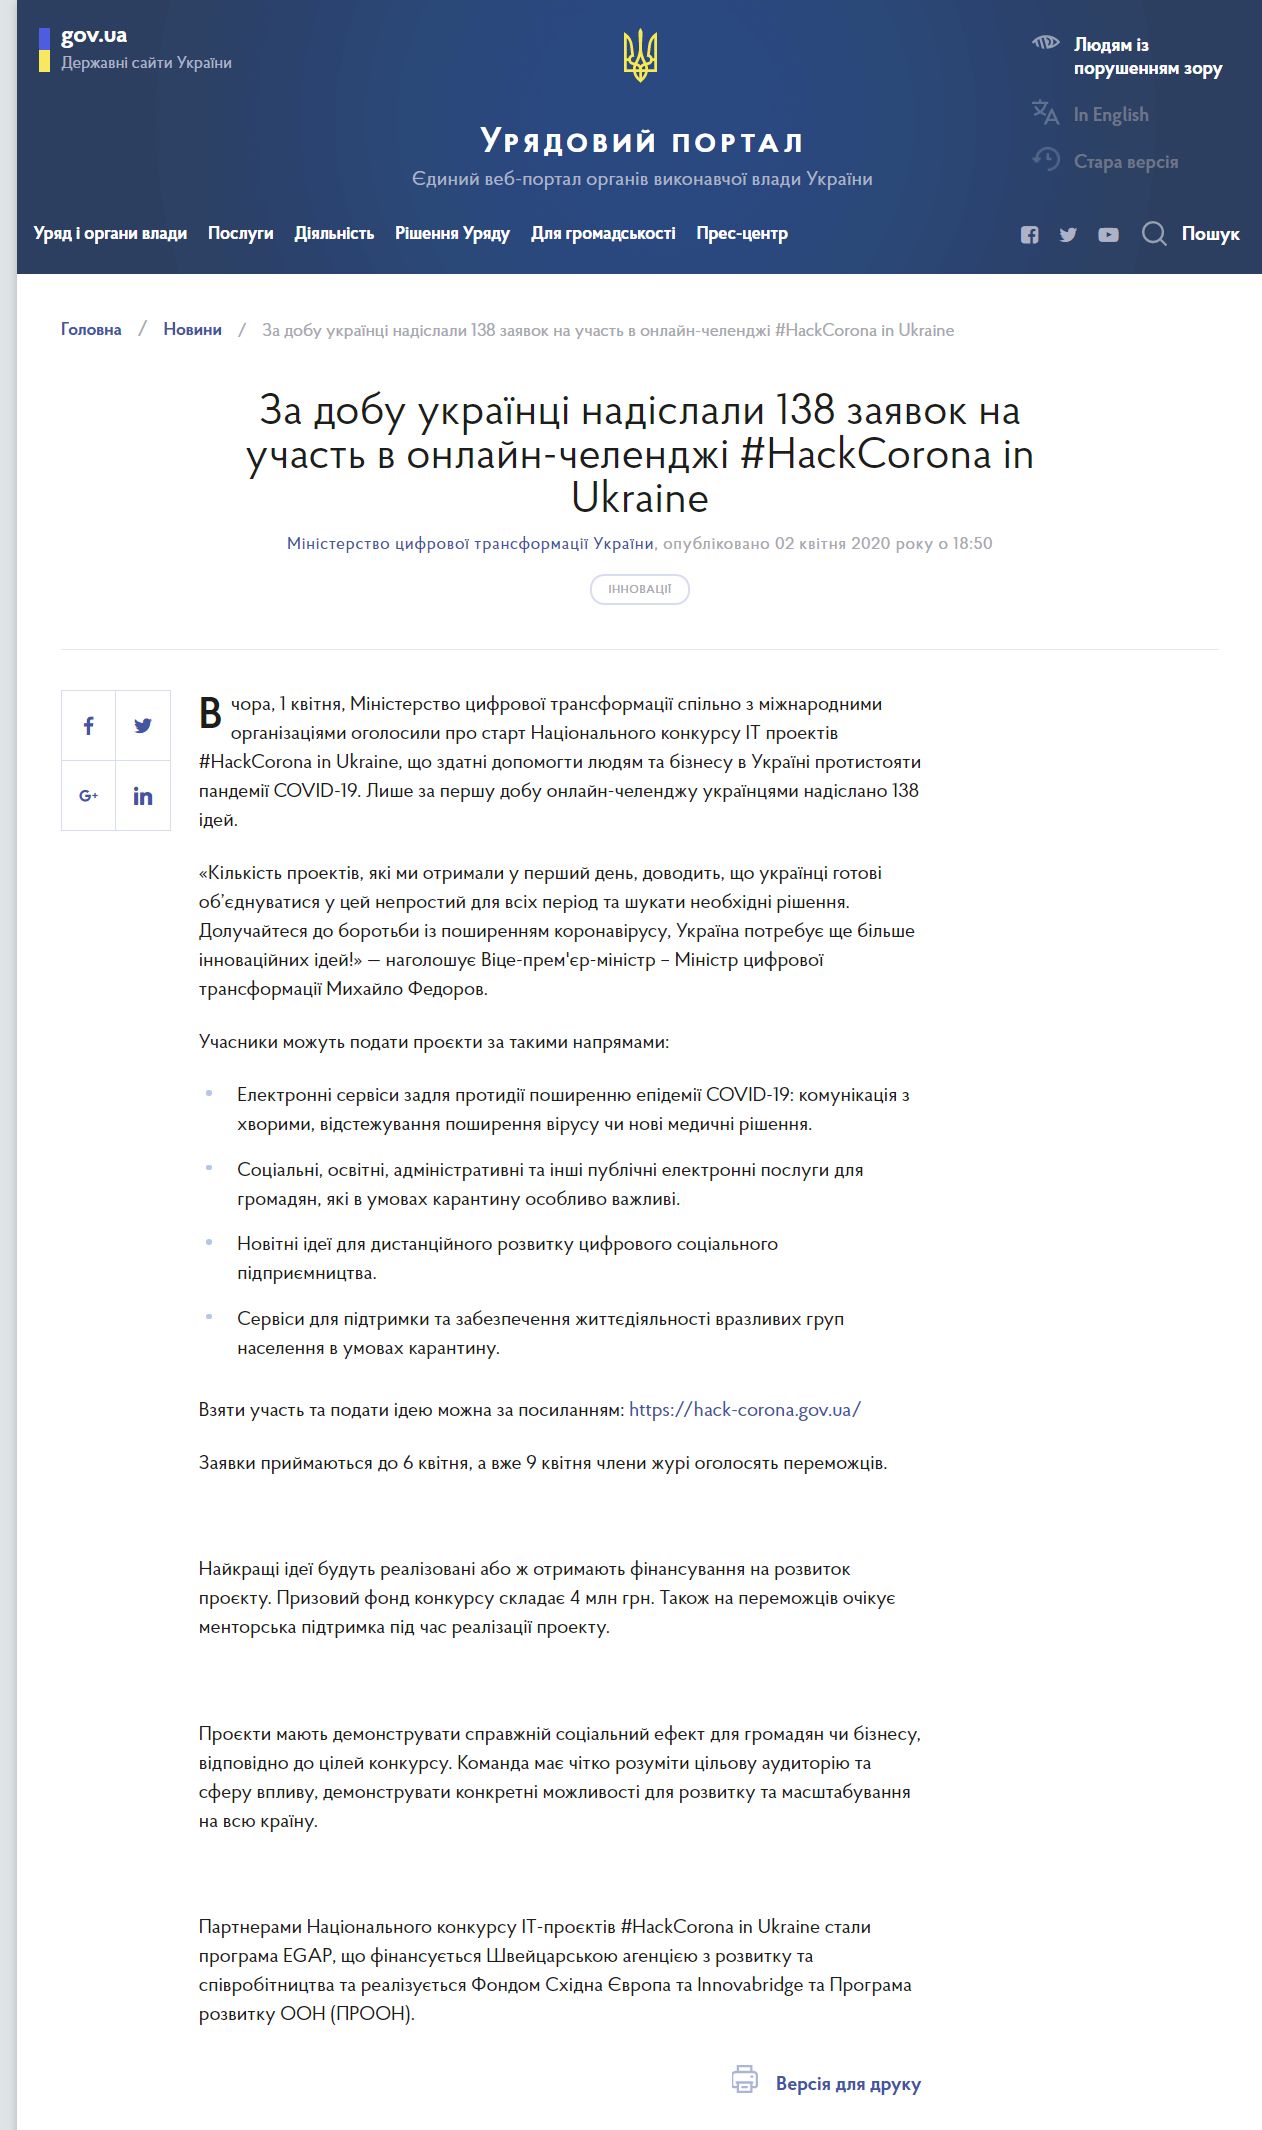 https://www.kmu.gov.ua/news/za-dobu-ukrayinci-nadislali-138-zayavok-na-uchast-v-onlajn-chelendzhi-hackcorona-ukraine